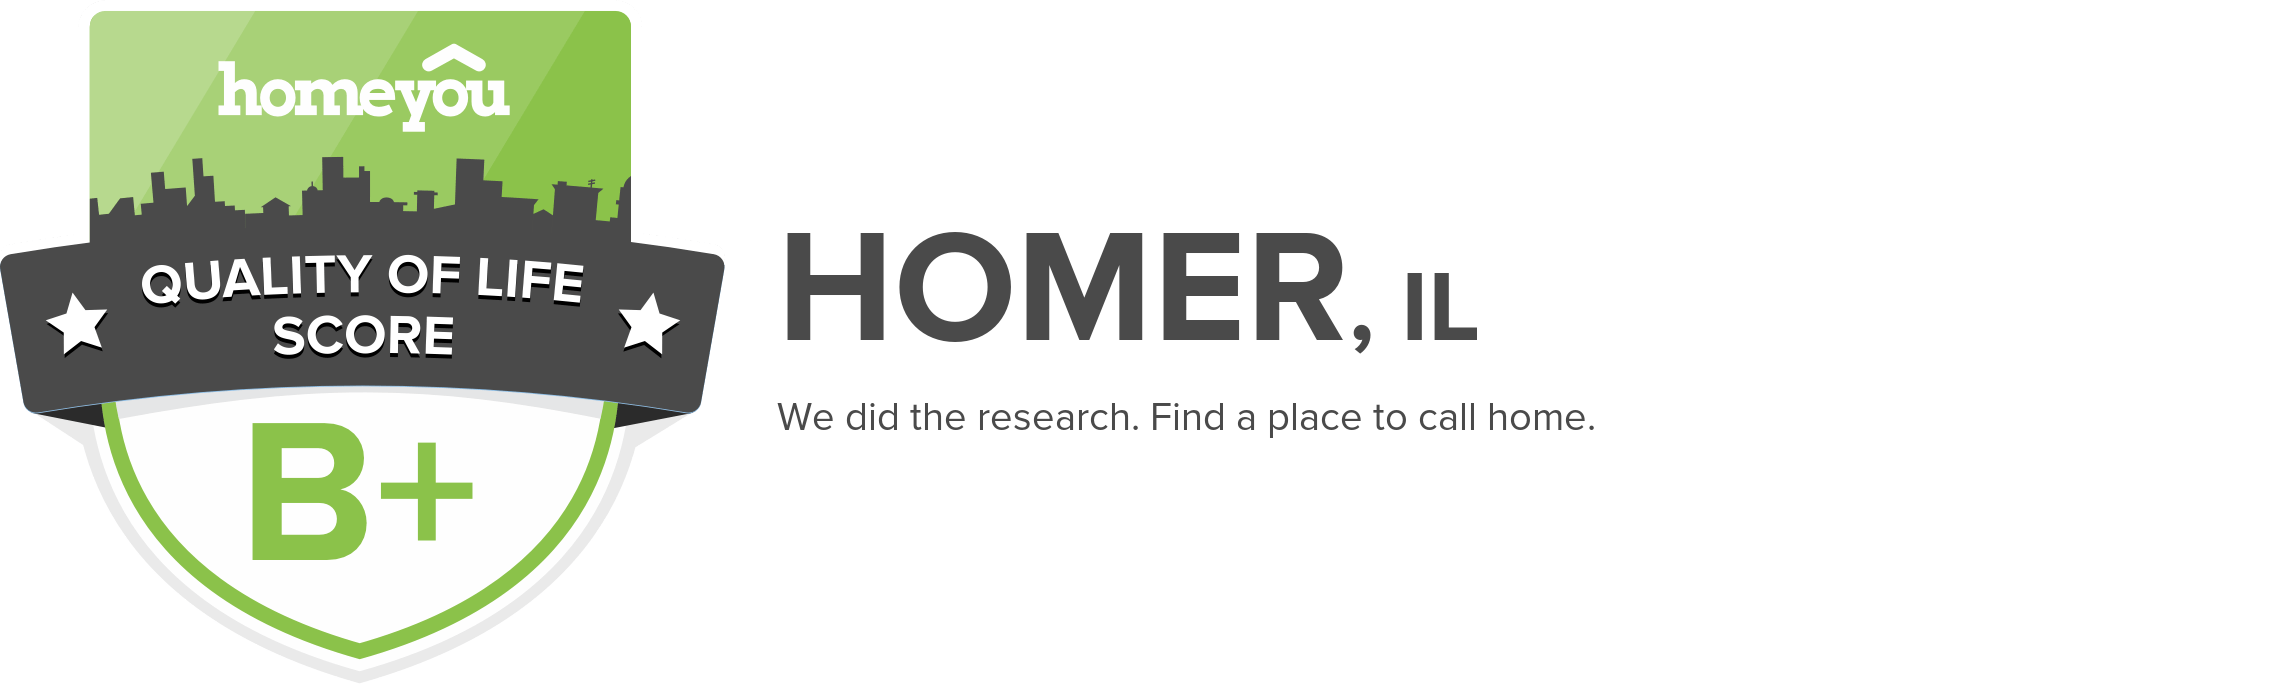 Homer, IL